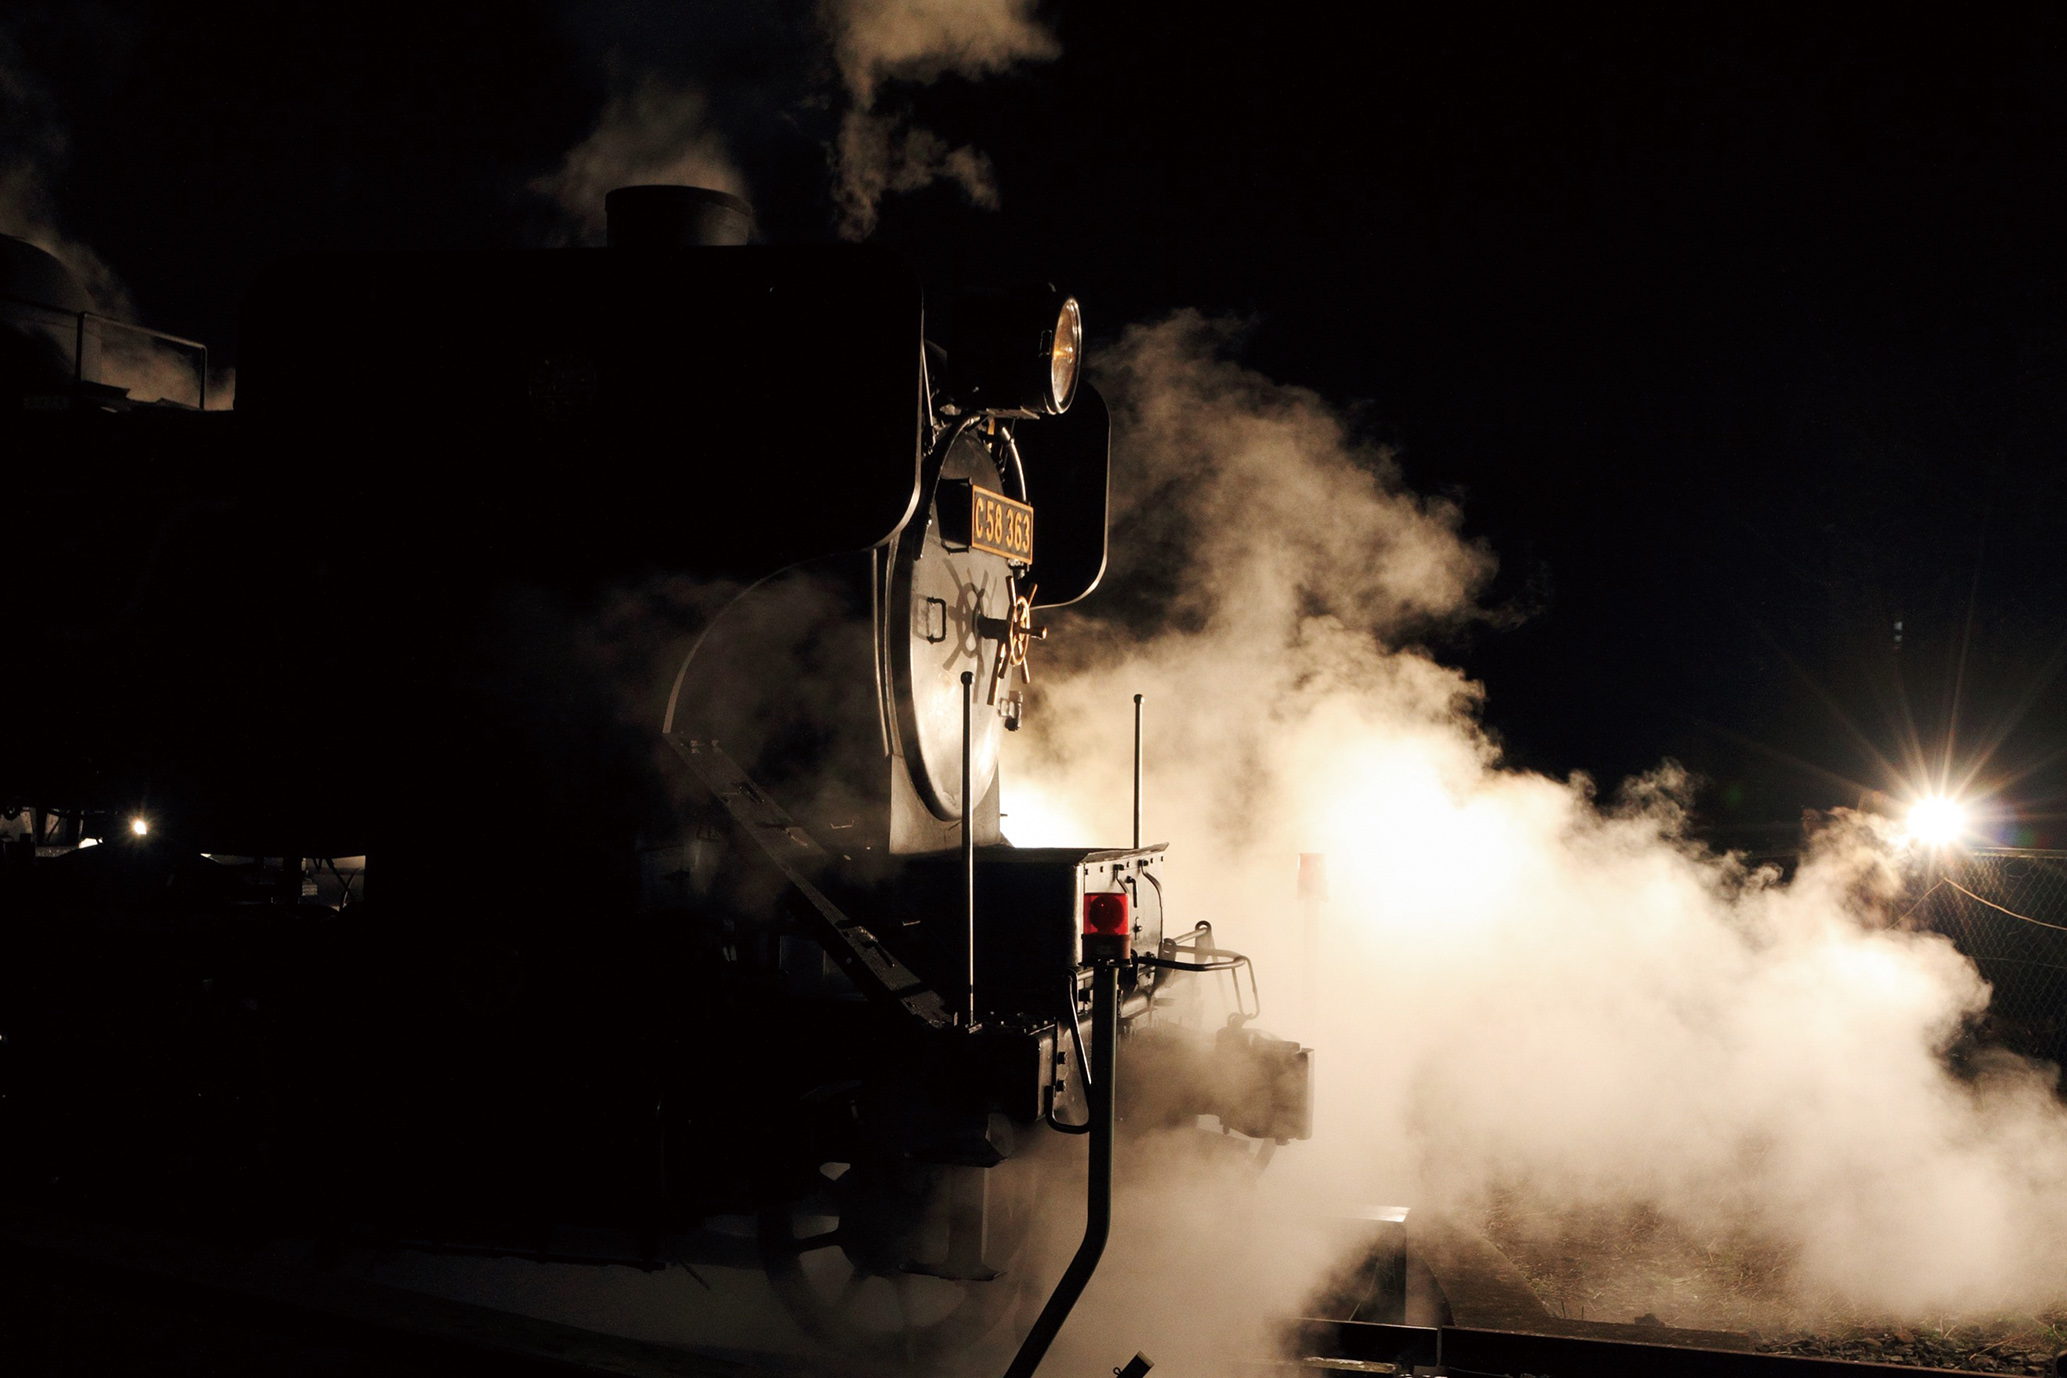 冬のナイトツアー 参加者募集 ライトアップで浮かびあがる白煙に包まれた美しい蒸気機関車をあなたのカメラで 秩父鉄道株式会社のプレスリリース